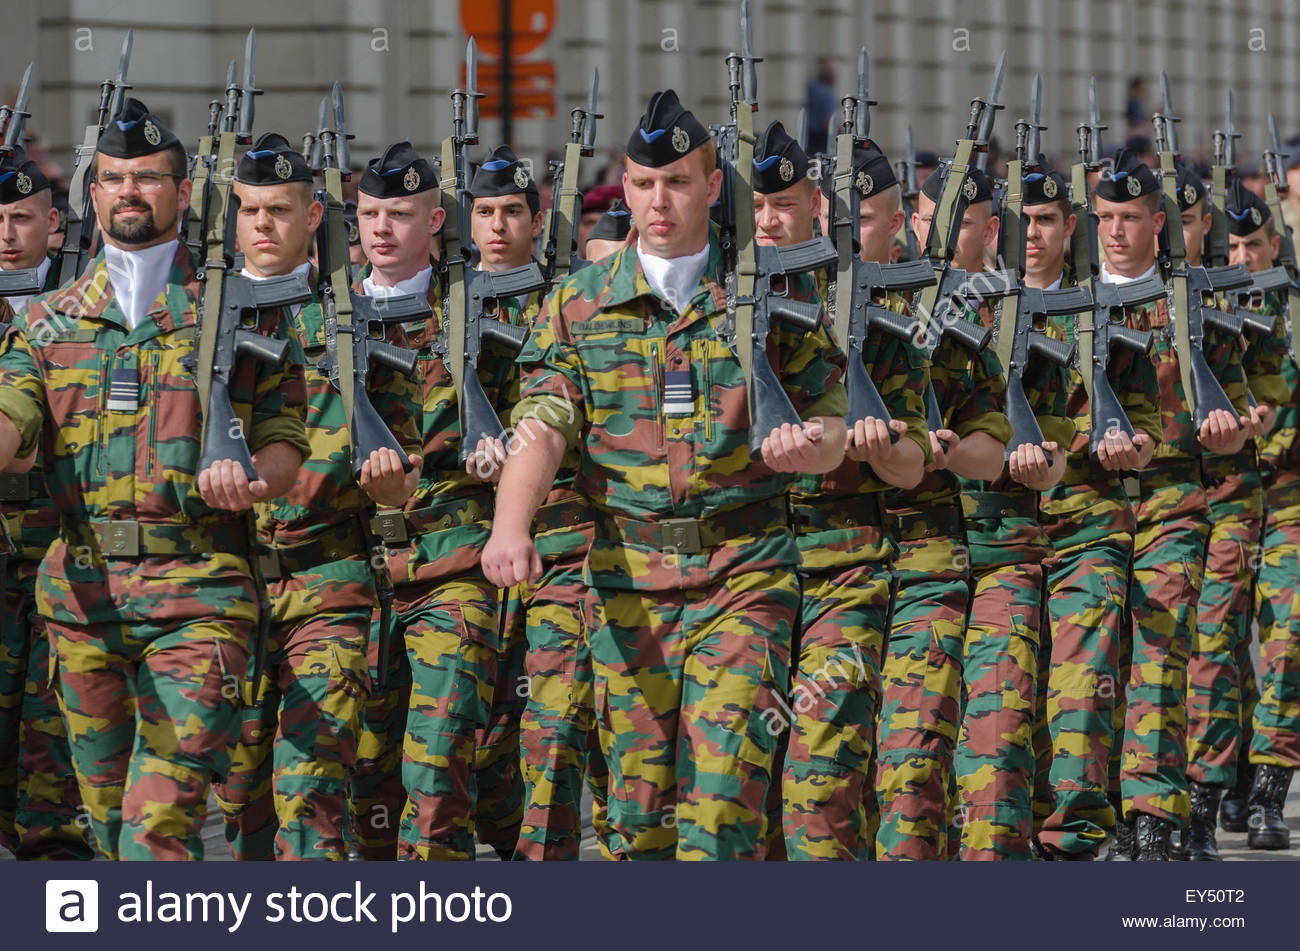 brussels-belgium-july-21st-2015-belgium-brussels-members-of-the-military-EY50T2.jpg